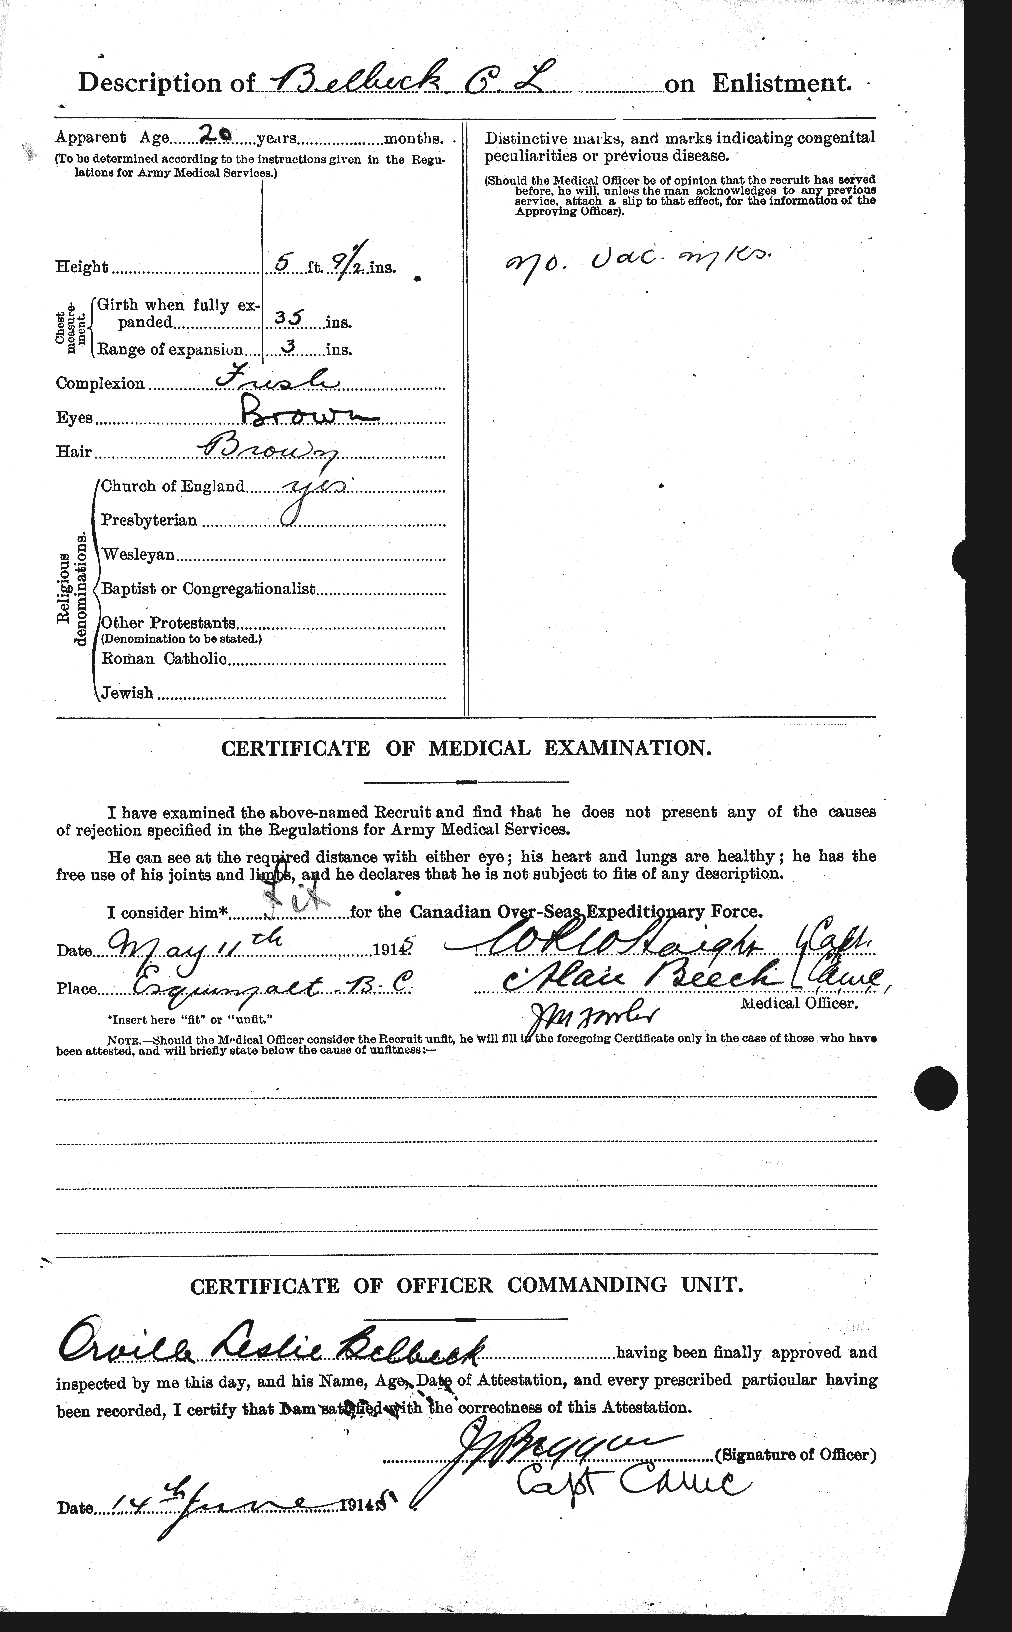 Dossiers du Personnel de la Première Guerre mondiale - CEC 232624b